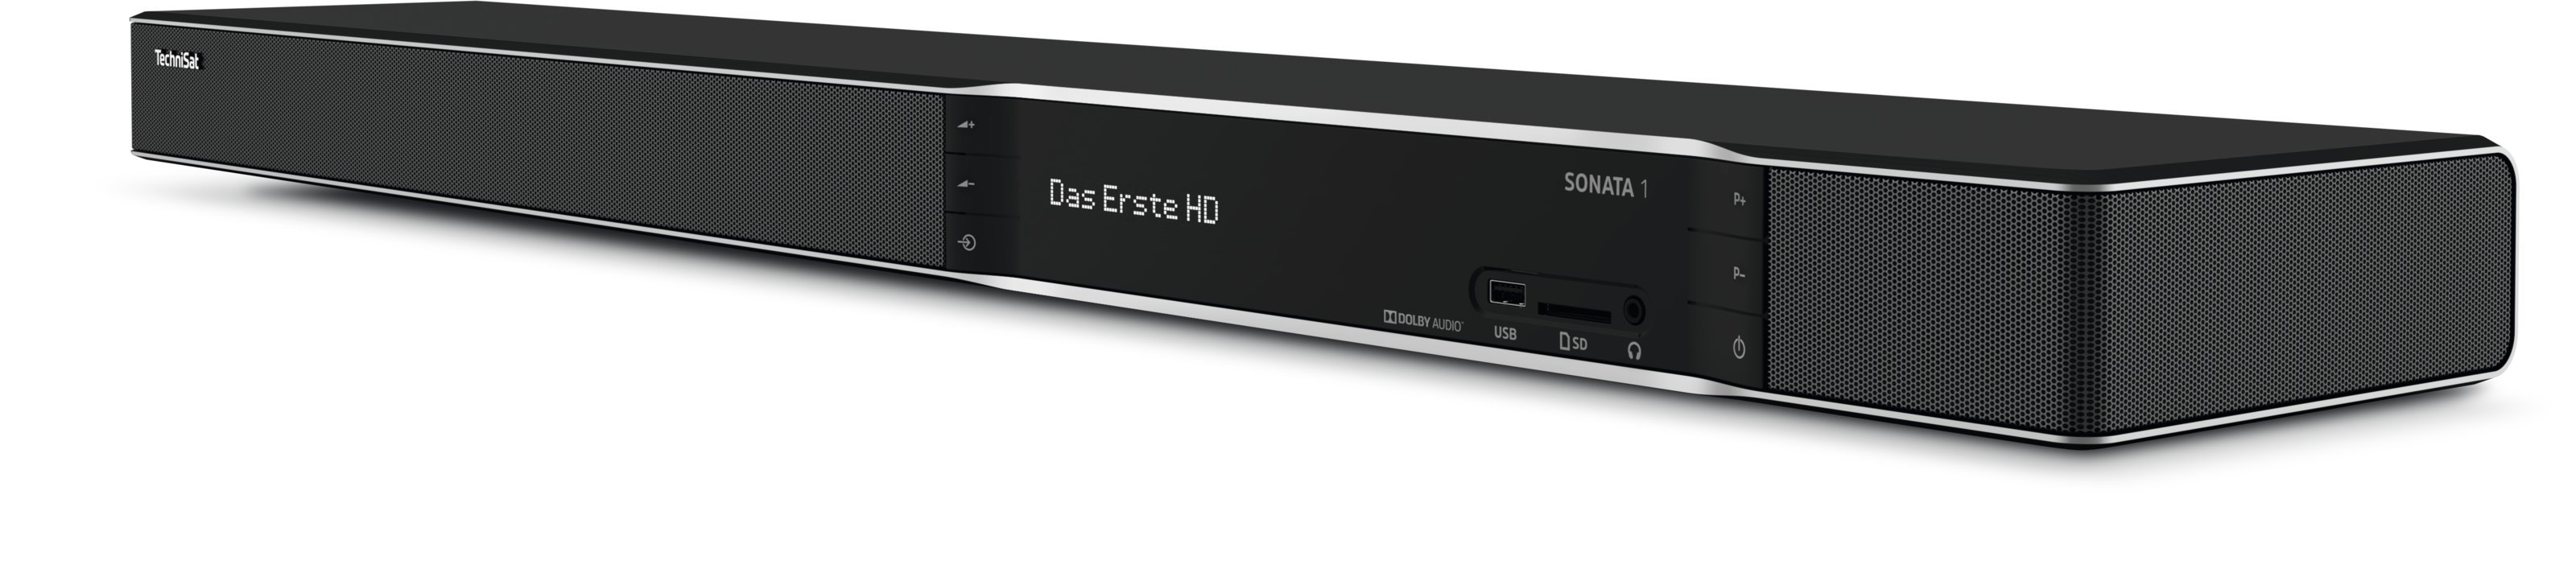 1 Twin TECHNISAT (H.265), (HDTV, DVB-C2, SONATA Tuner, DVB-T2 DVB-S2, (H.264), Receiver PVR-Funktion, UHD schwarz) DVB-T, DVB-T2